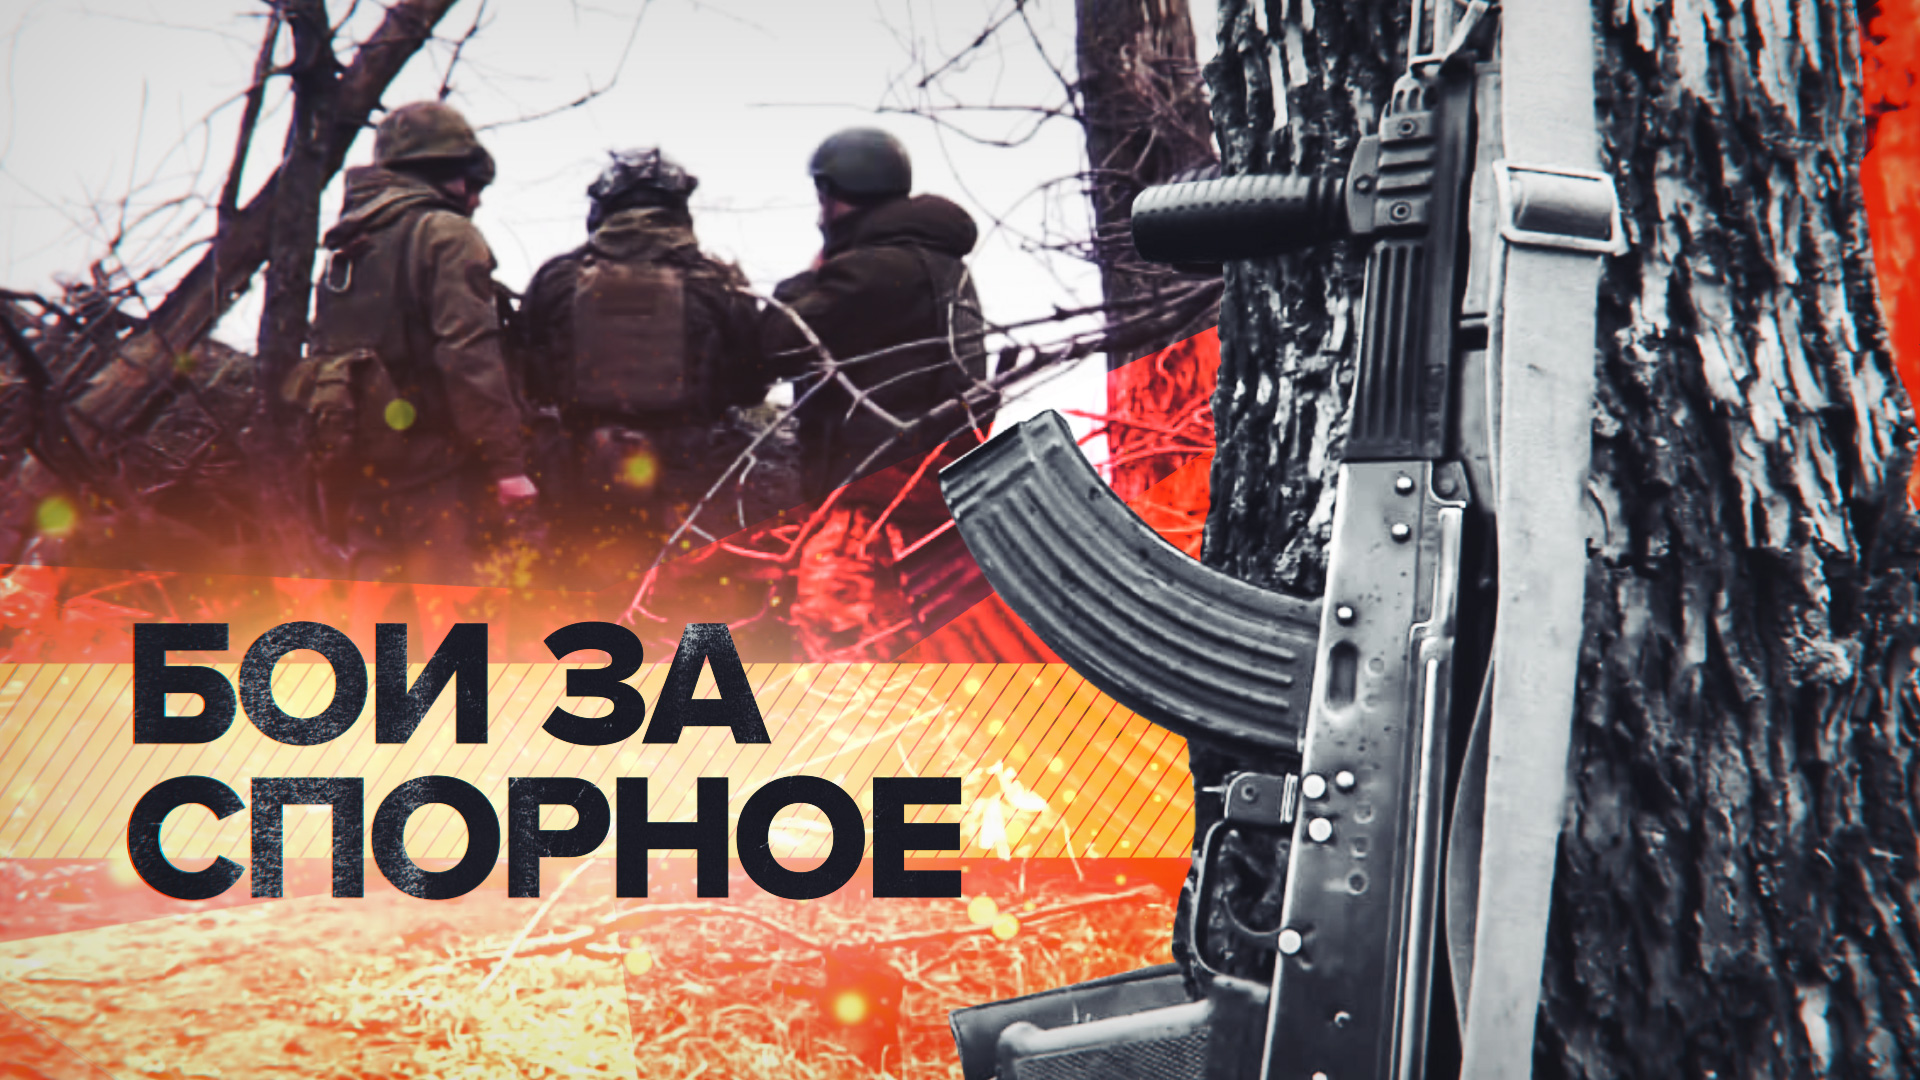 «Спорное будет наше»: российский военный — об ожесточённых боях за посёлок